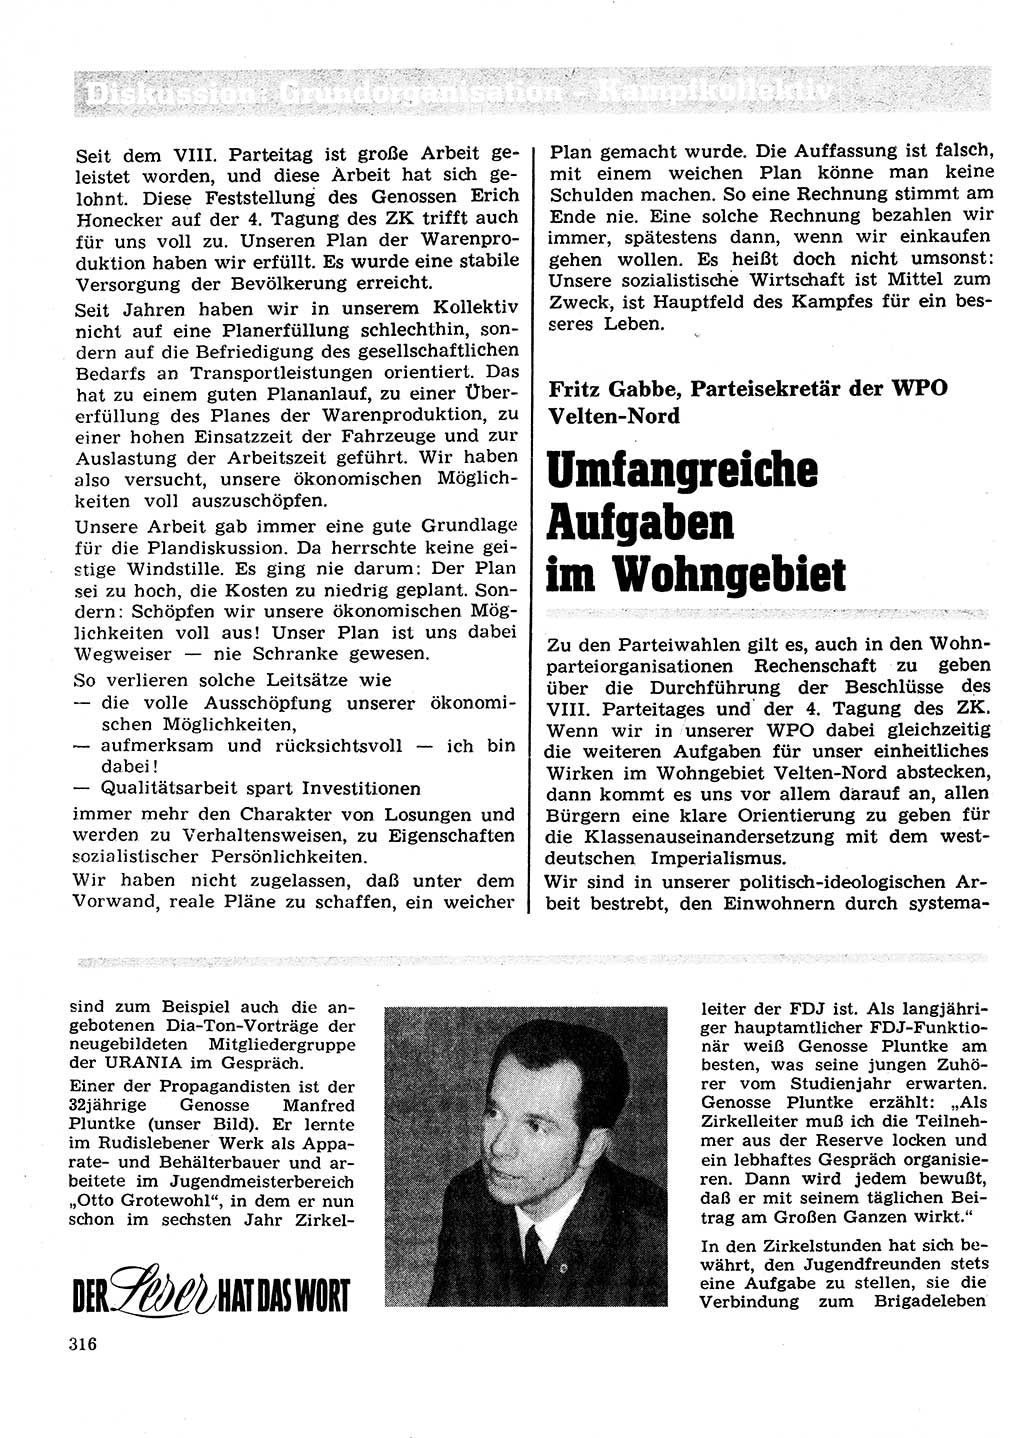 Neuer Weg (NW), Organ des Zentralkomitees (ZK) der SED (Sozialistische Einheitspartei Deutschlands) für Fragen des Parteilebens, 27. Jahrgang [Deutsche Demokratische Republik (DDR)] 1972, Seite 316 (NW ZK SED DDR 1972, S. 316)